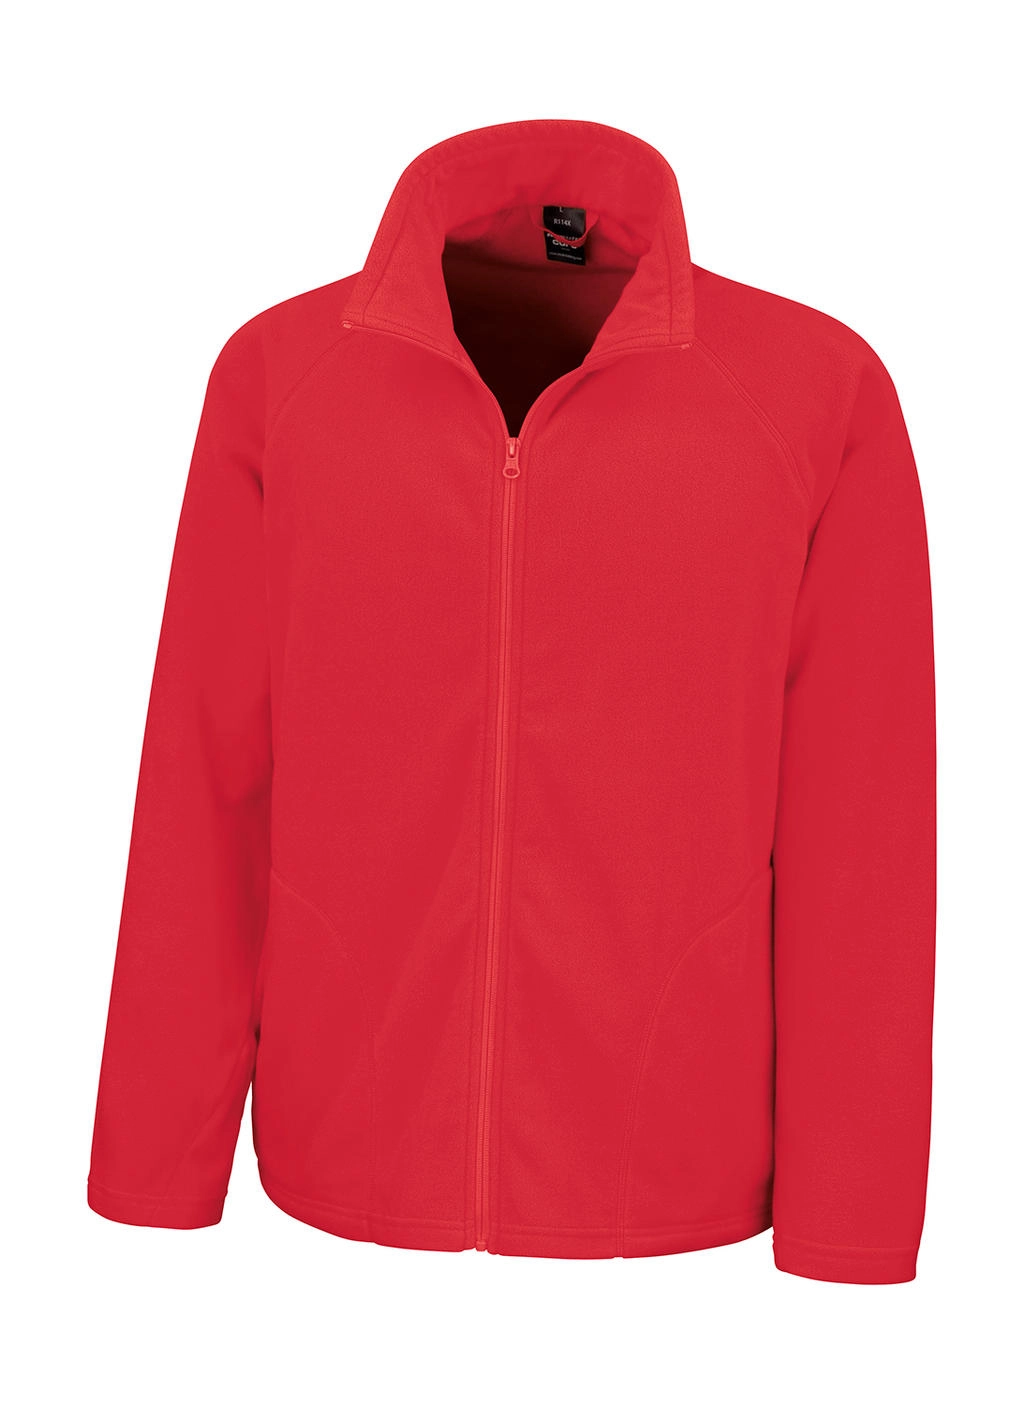 Microfleece Jacket zum Besticken und Bedrucken in der Farbe Red mit Ihren Logo, Schriftzug oder Motiv.